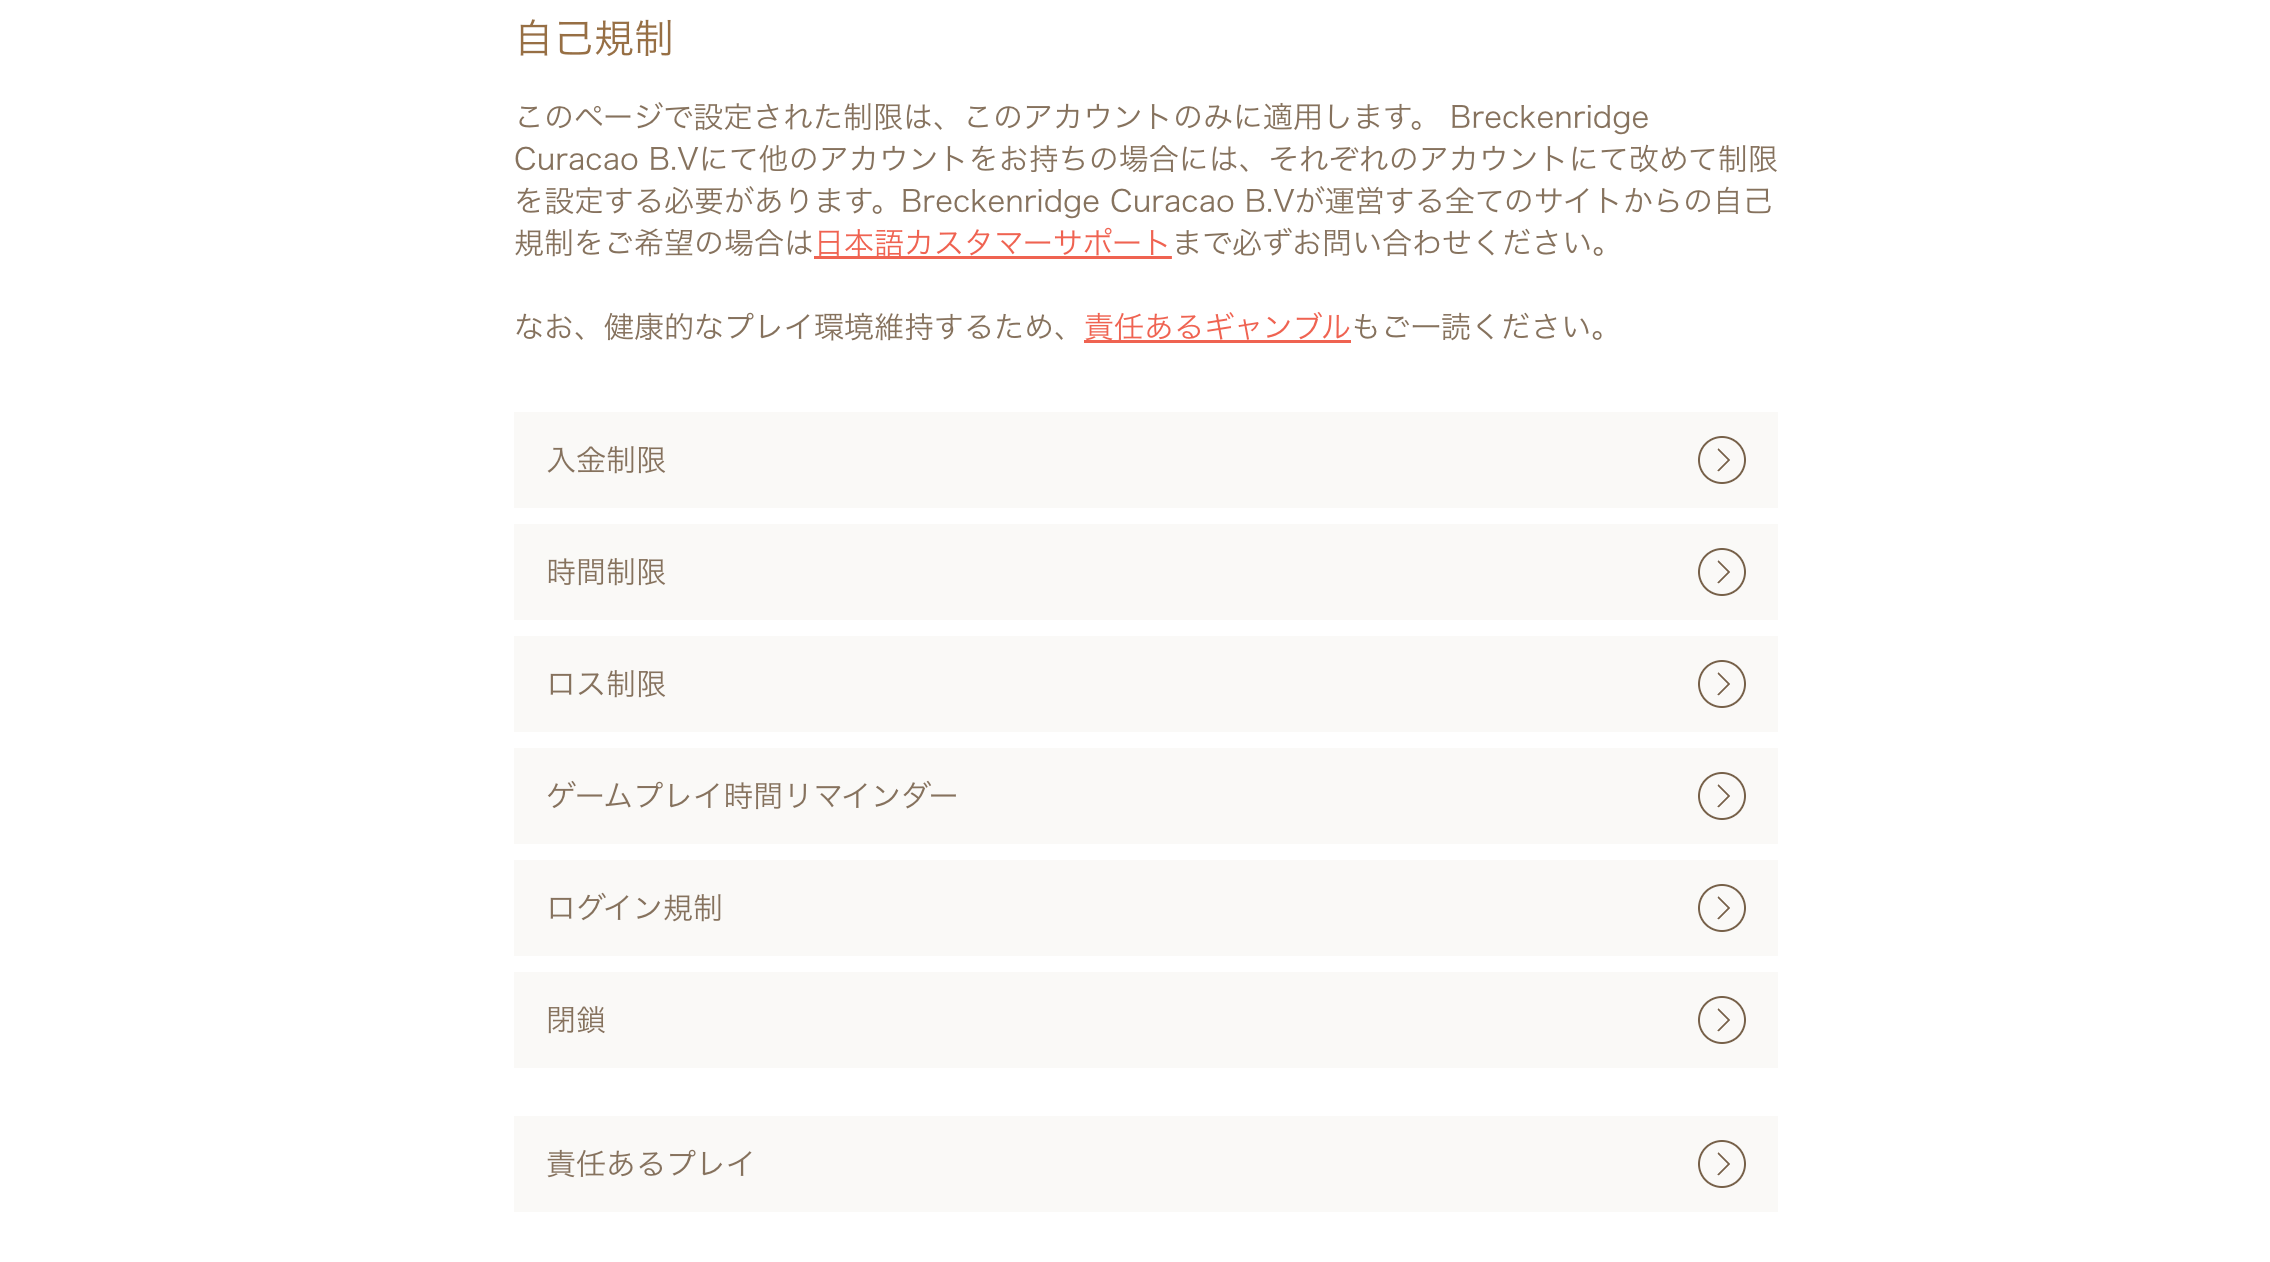 遊雅堂公式サイト、自己規制設定画面